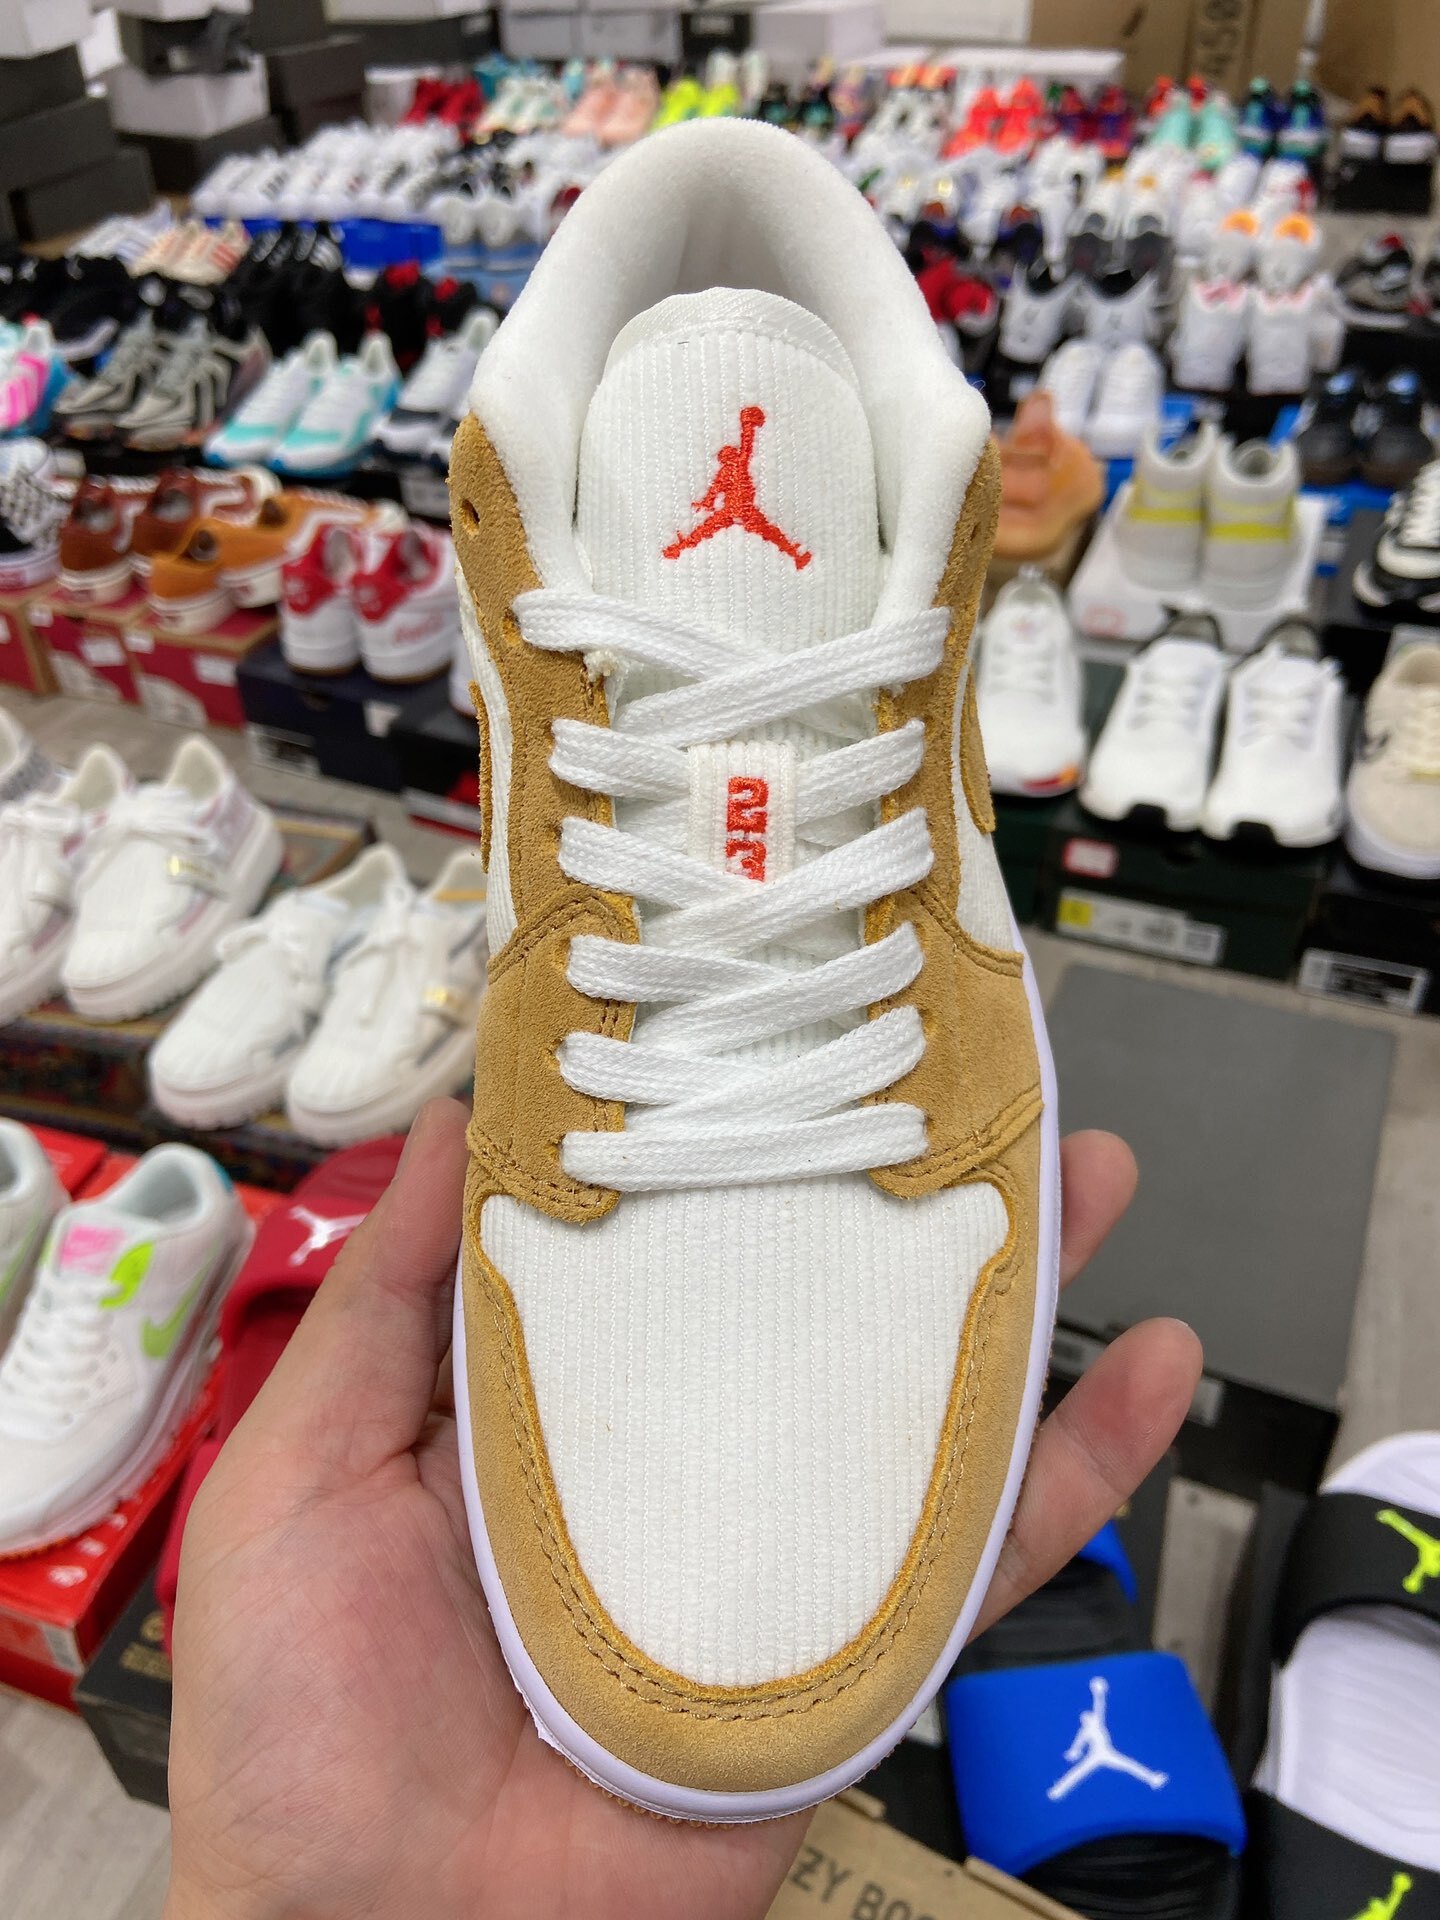 Купить в Москве недорого баскетбольные кроссовки Air Jordan 1